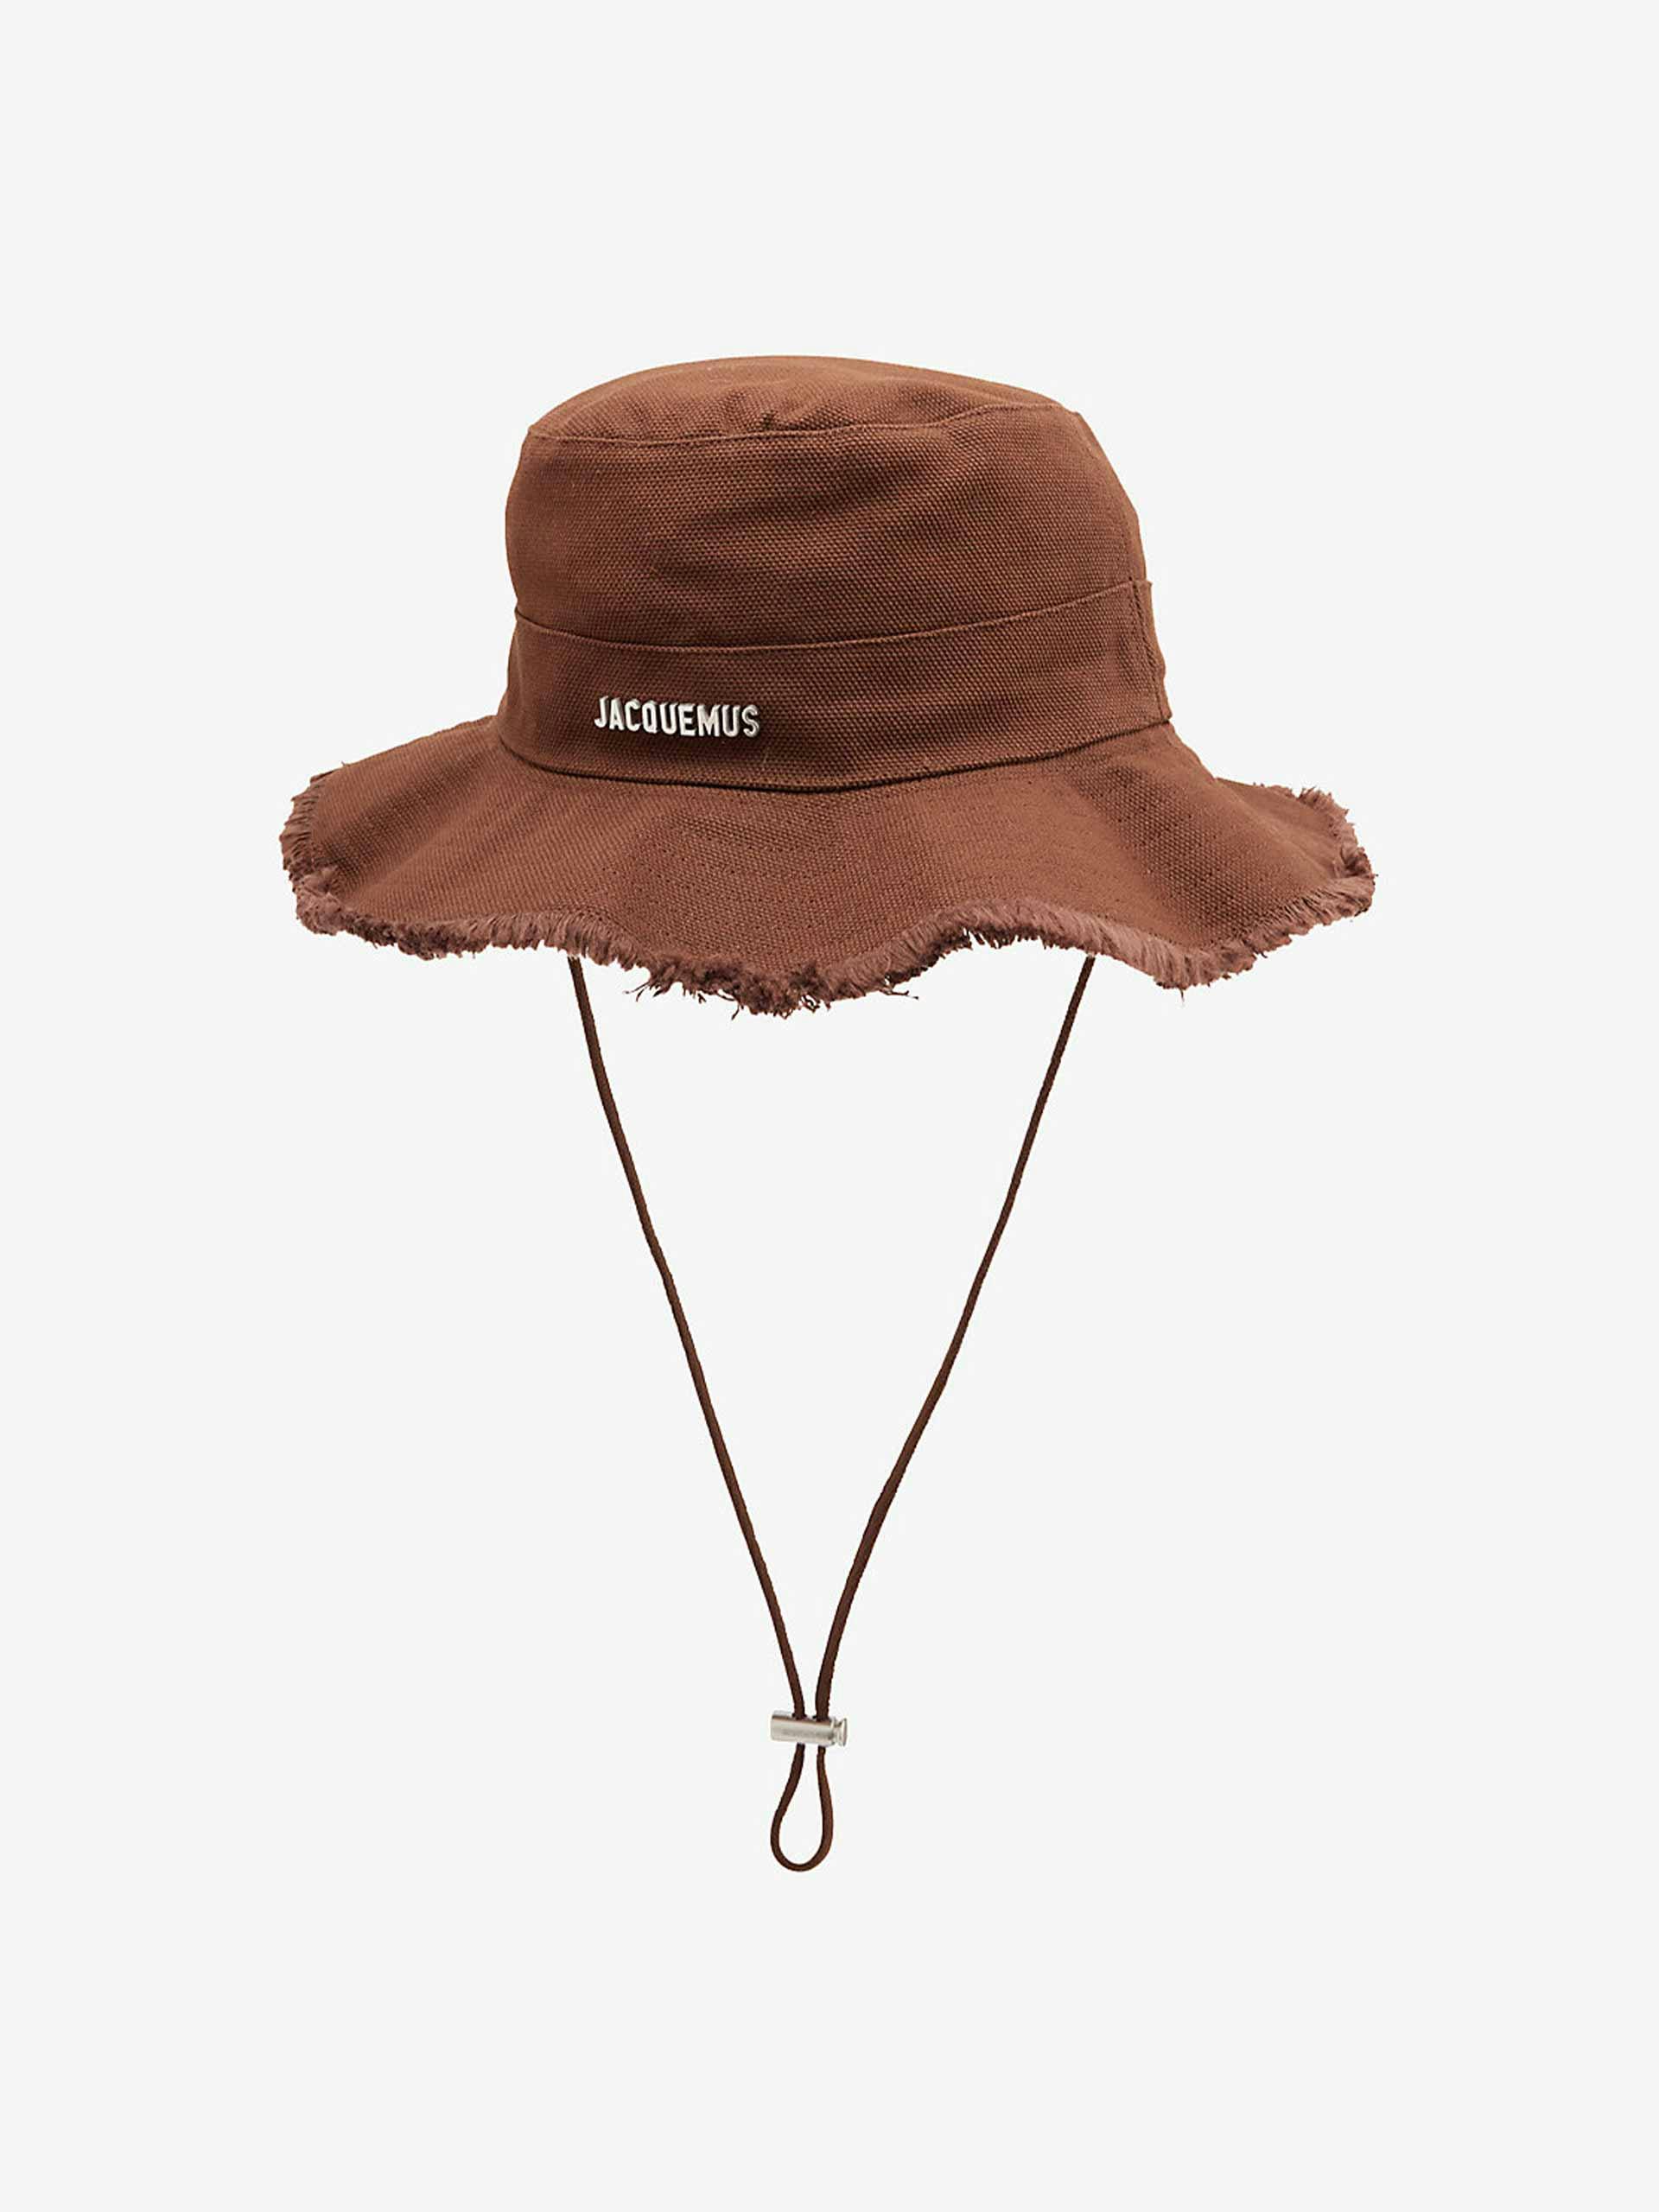 Brown cotton twill hat